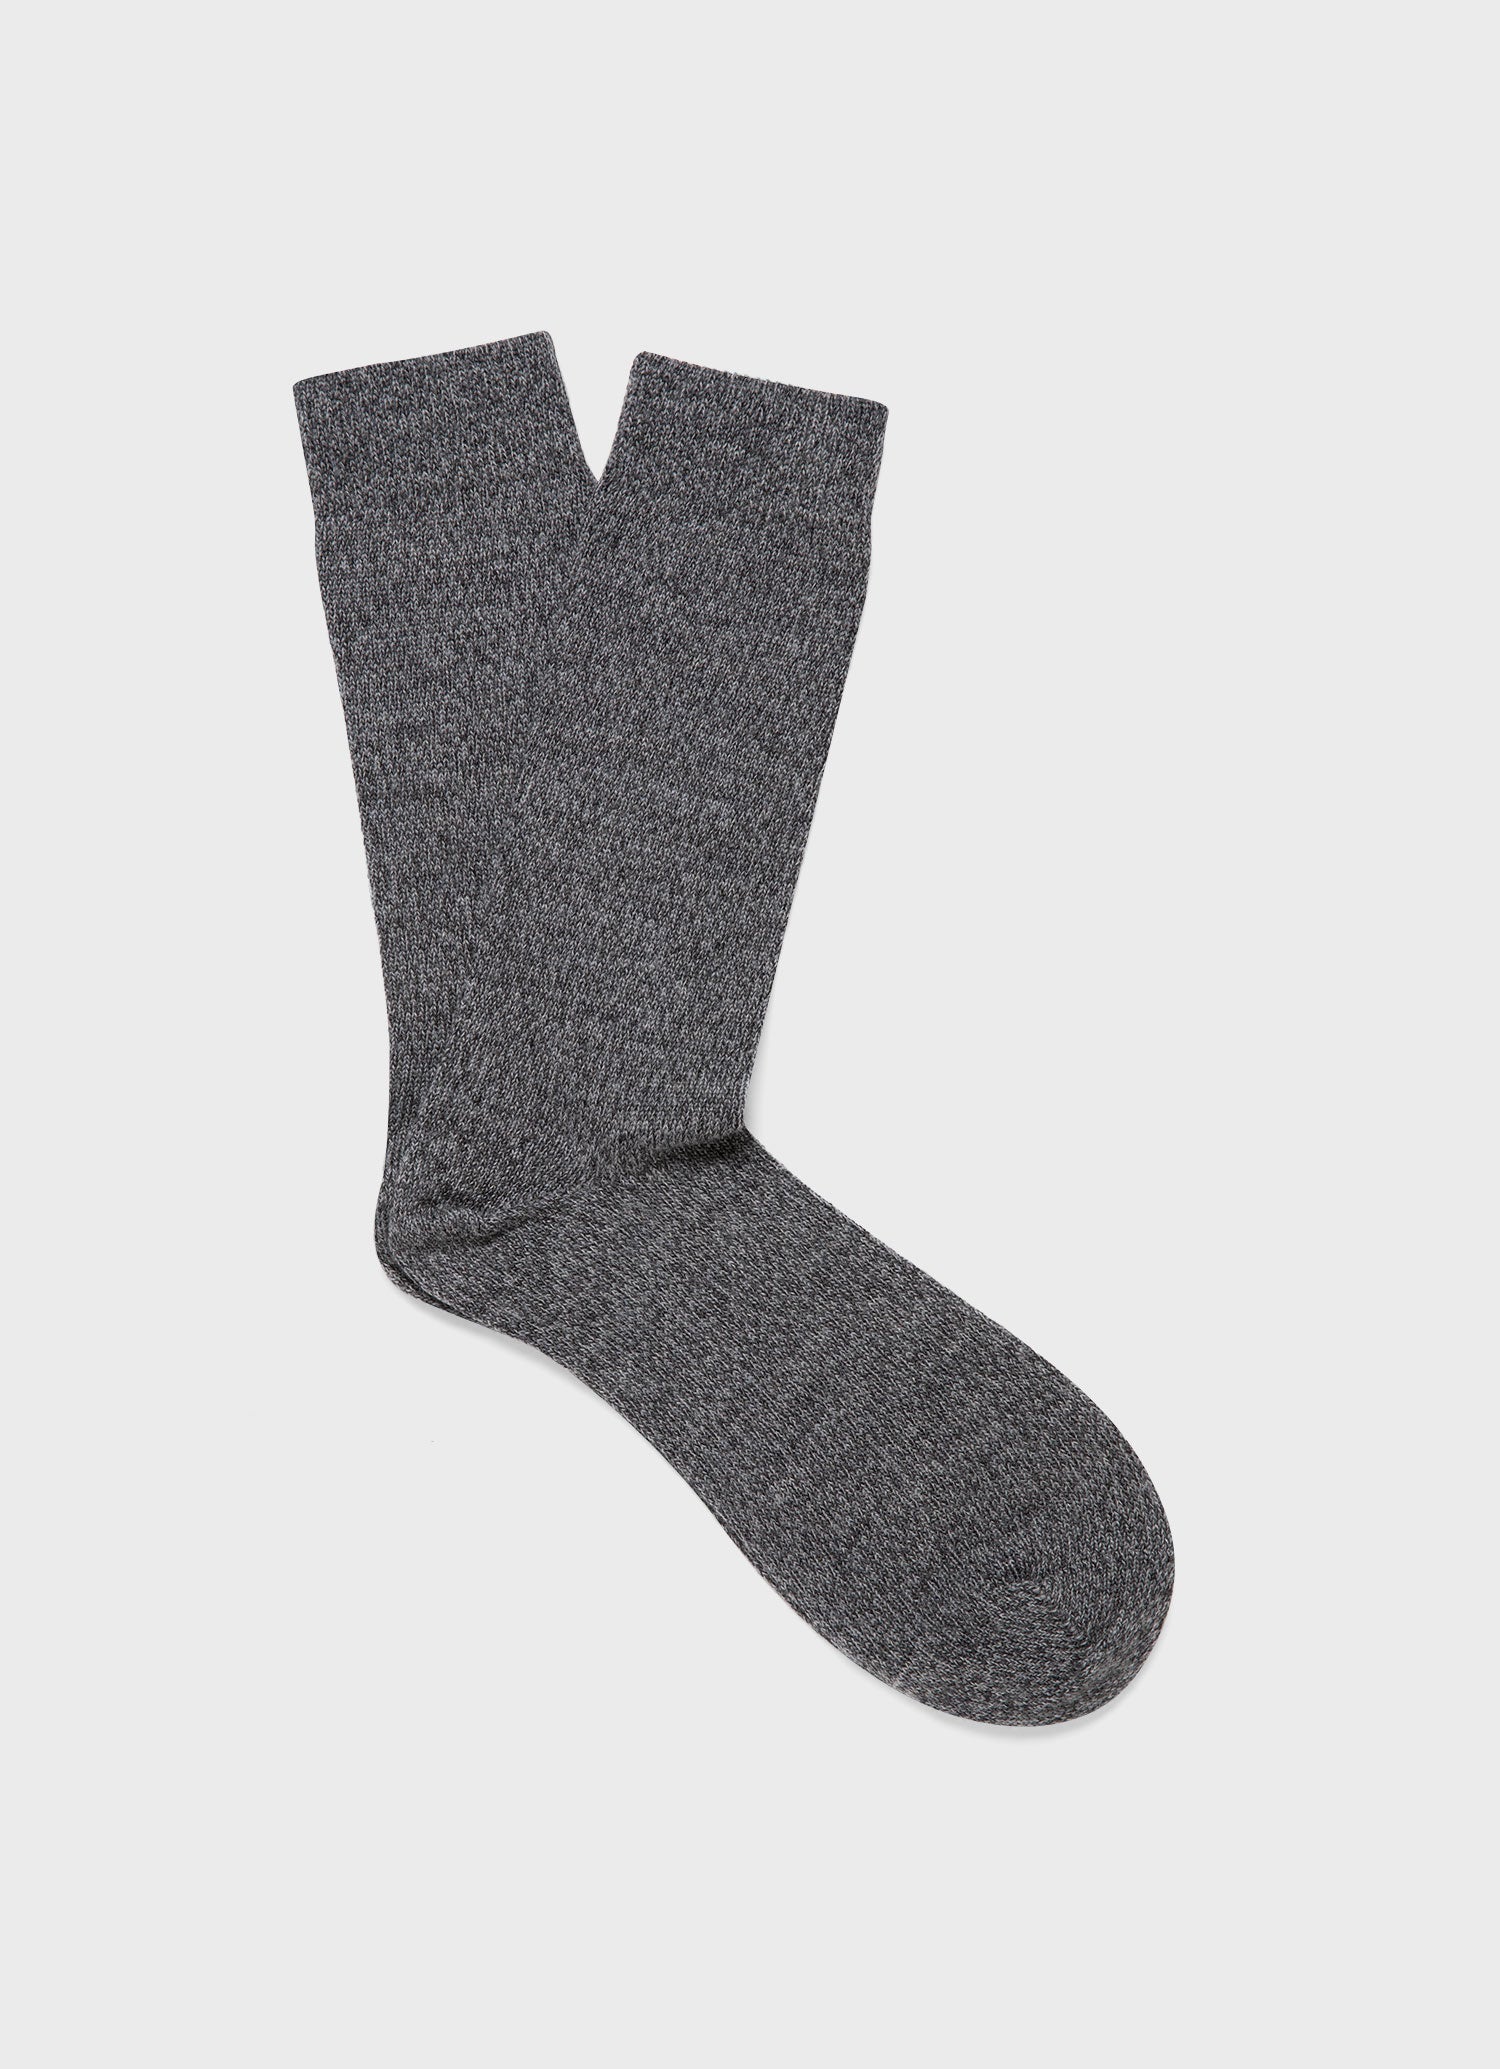 Men's Merino Wool Socks in Grey Twist